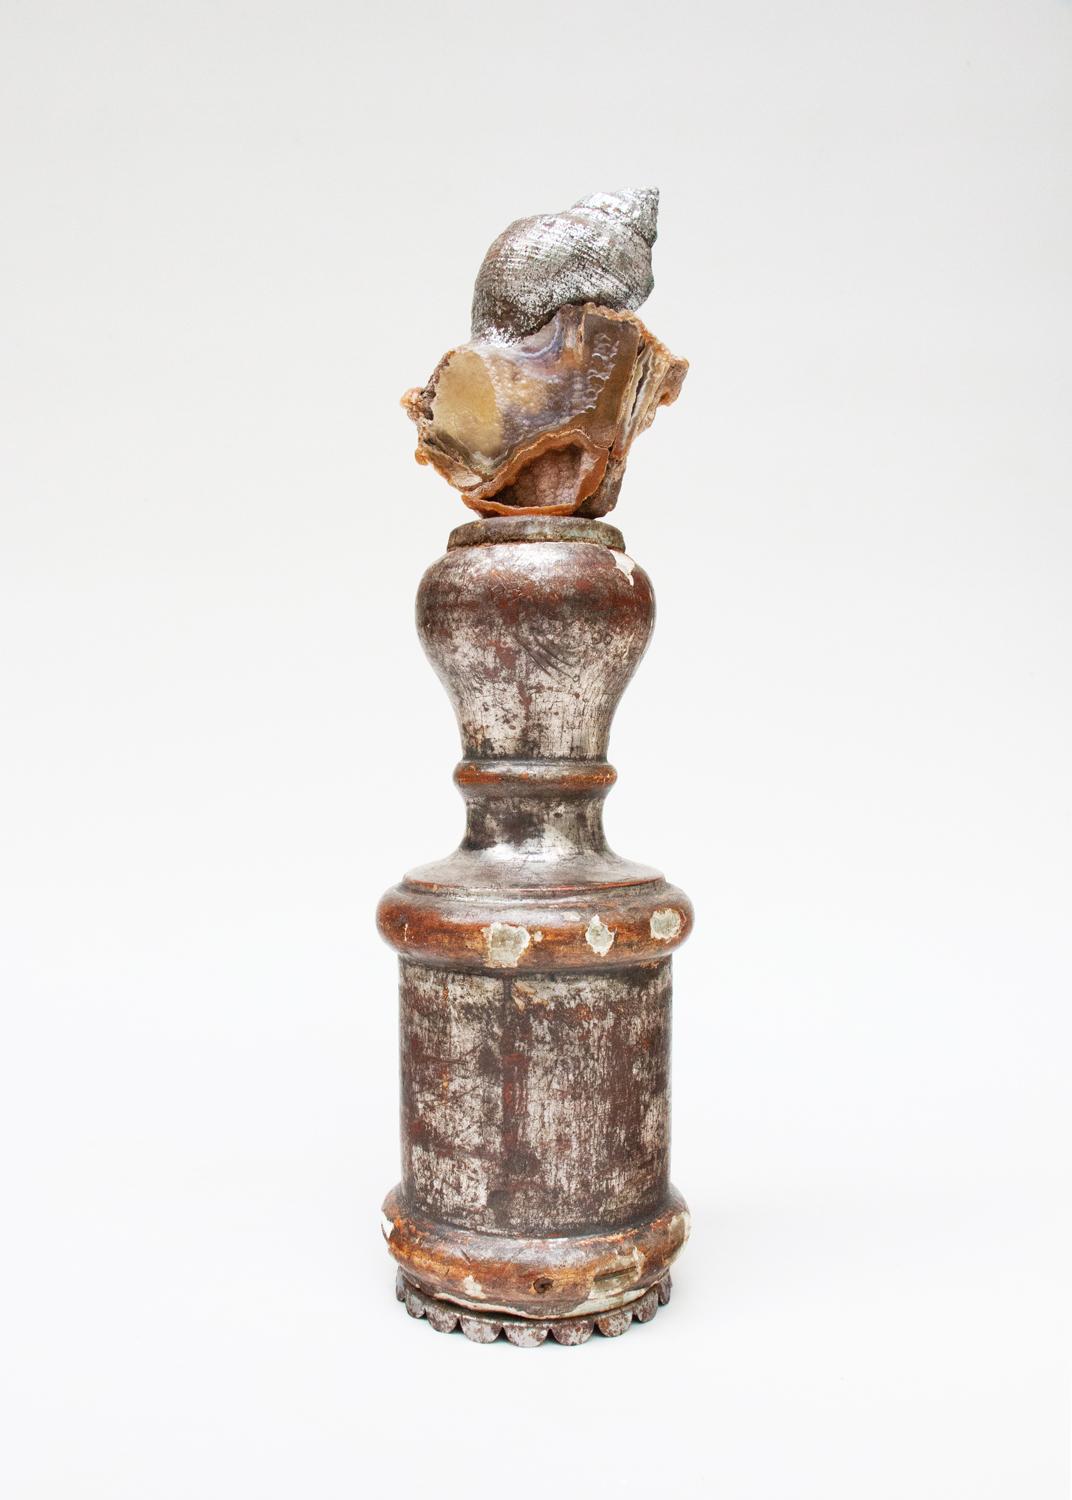 Sculptural fragment de chandelier italien du XVIIIe siècle avec corail agate poli et coquille de feuille d'argent coordonnée. 

La partie supérieure du chandelier en argent du XVIIIe siècle, sculptée à la main, provenait à l'origine d'un chandelier